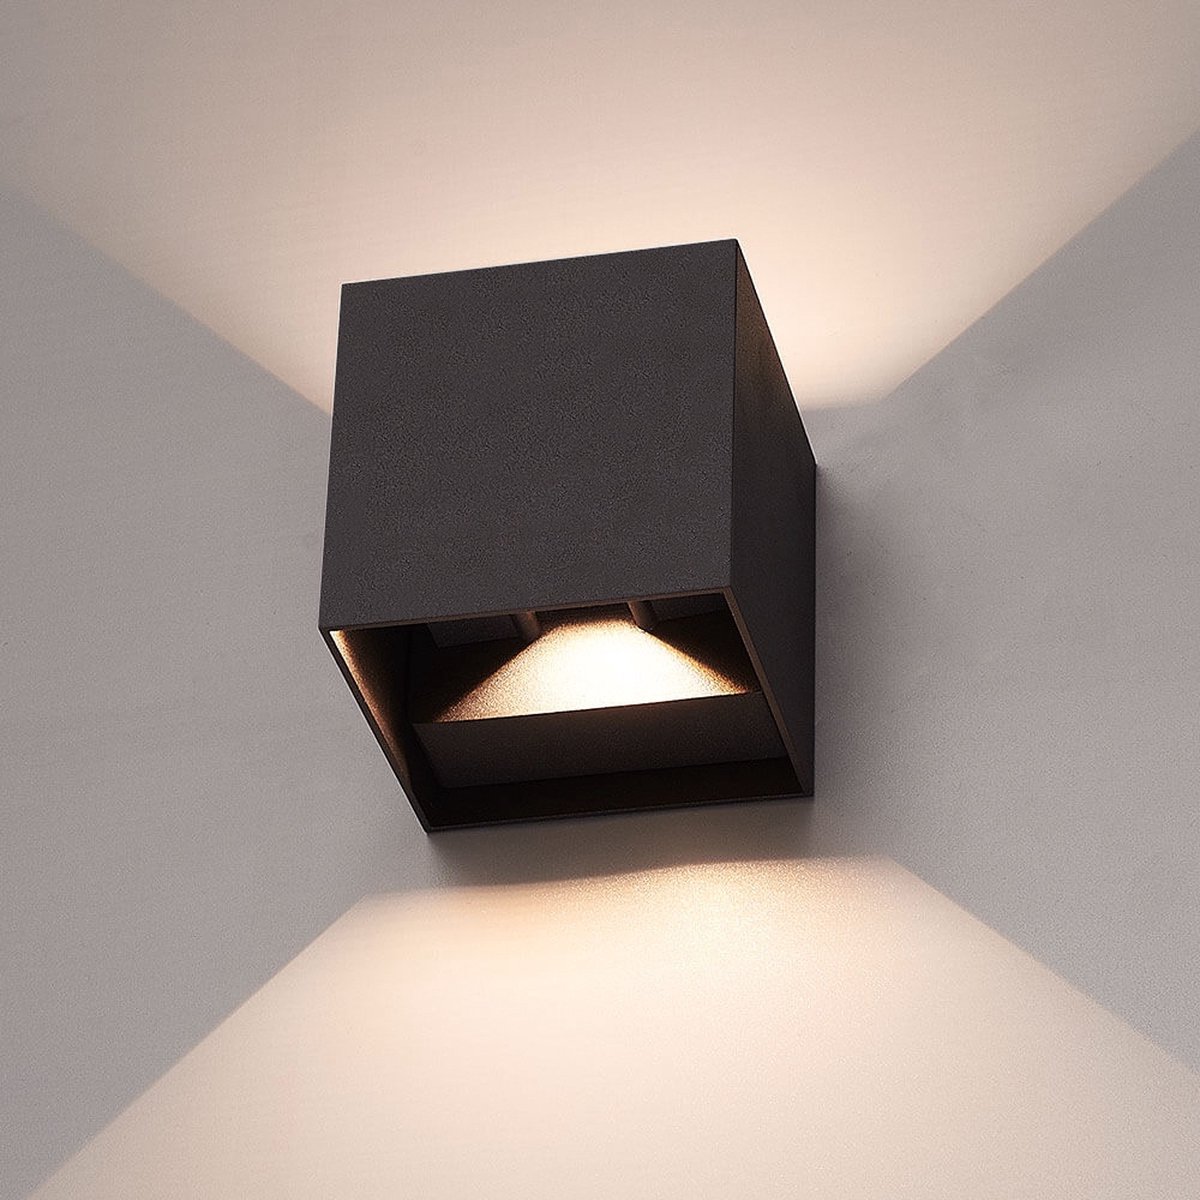 HOFTRONICâ„¢ Dimbare LED Wandlamp Zwart - Kansas - 6 Watt - 3000K - Tweezijdig oplichtend - IP54 - Uitermate geschikt voor binnen en buiten